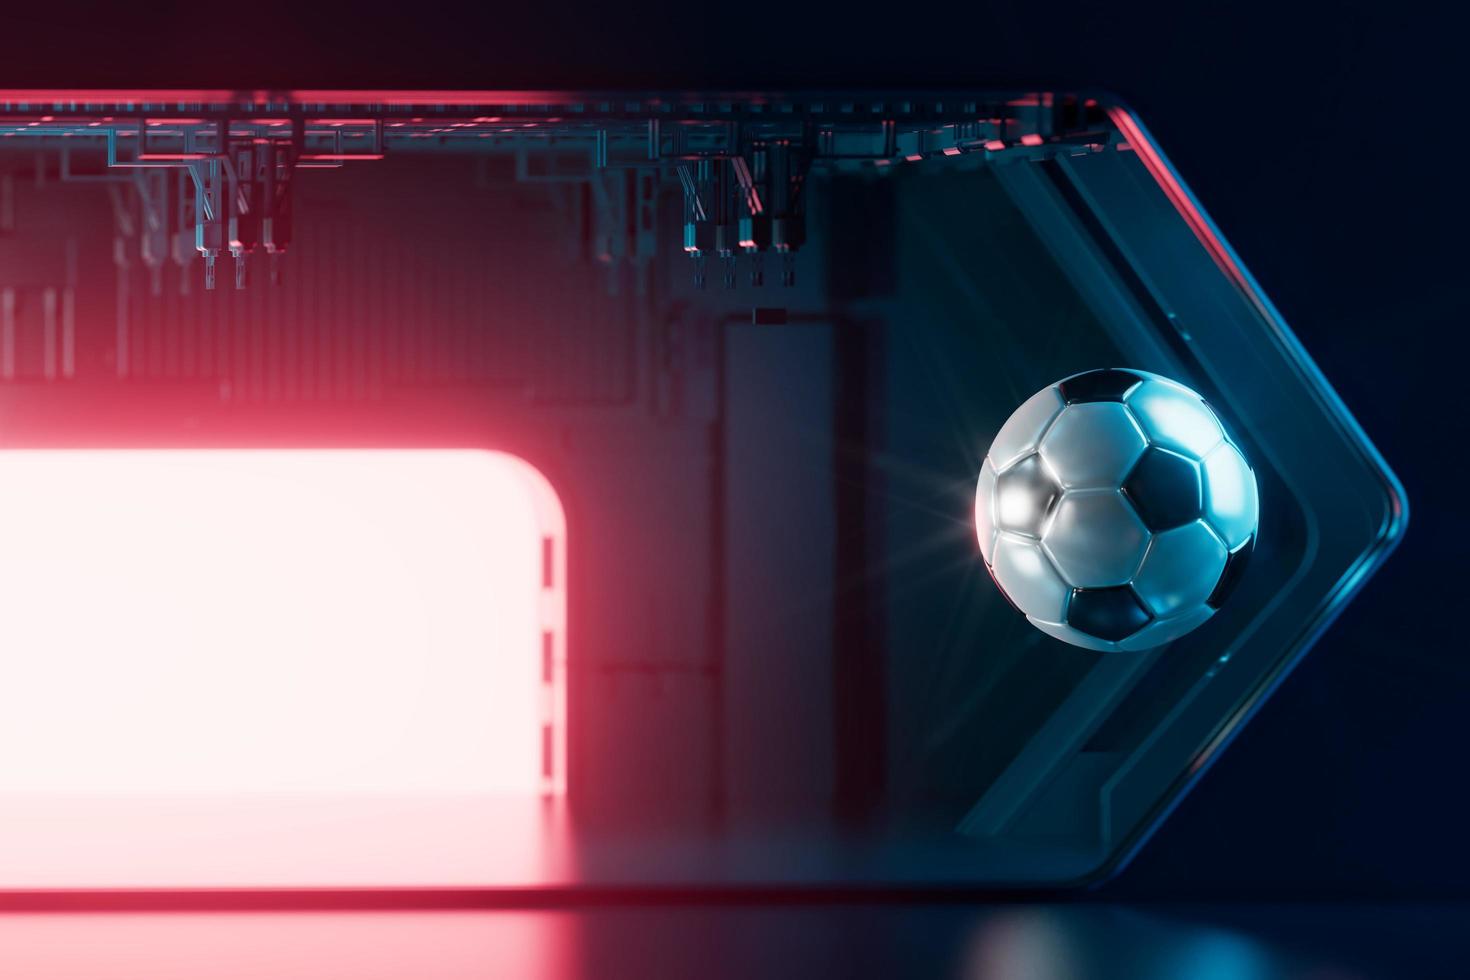 Fußball 3D-Objekt im abstrakten Hintergrund, Arena-Konzeptdesign, Kopierraum, 3D-Illustration, leuchtender Neonlicht-Textrahmen, 3D-Rendering-Element, Fußballspielsport, Sportausrüstung, realistischer Ball foto